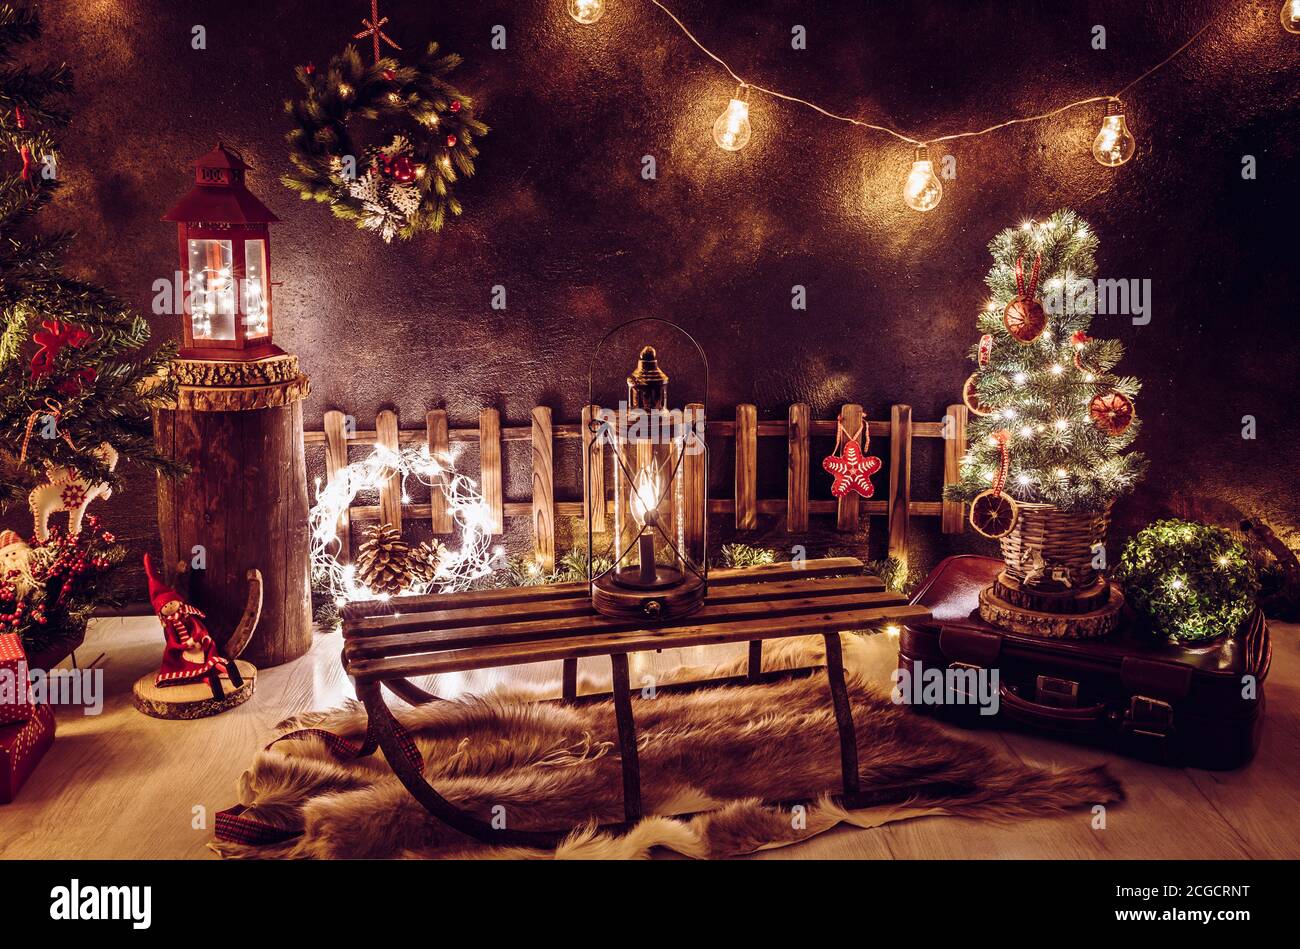 Weihnachtsthema Arrangement im dunklen Abend Heim Zimmer. Viele Party-String Lichter beleuchtet, Laternen, alte Retro-Schlitten, winzigen Weihnachtsbaum. Stockfoto